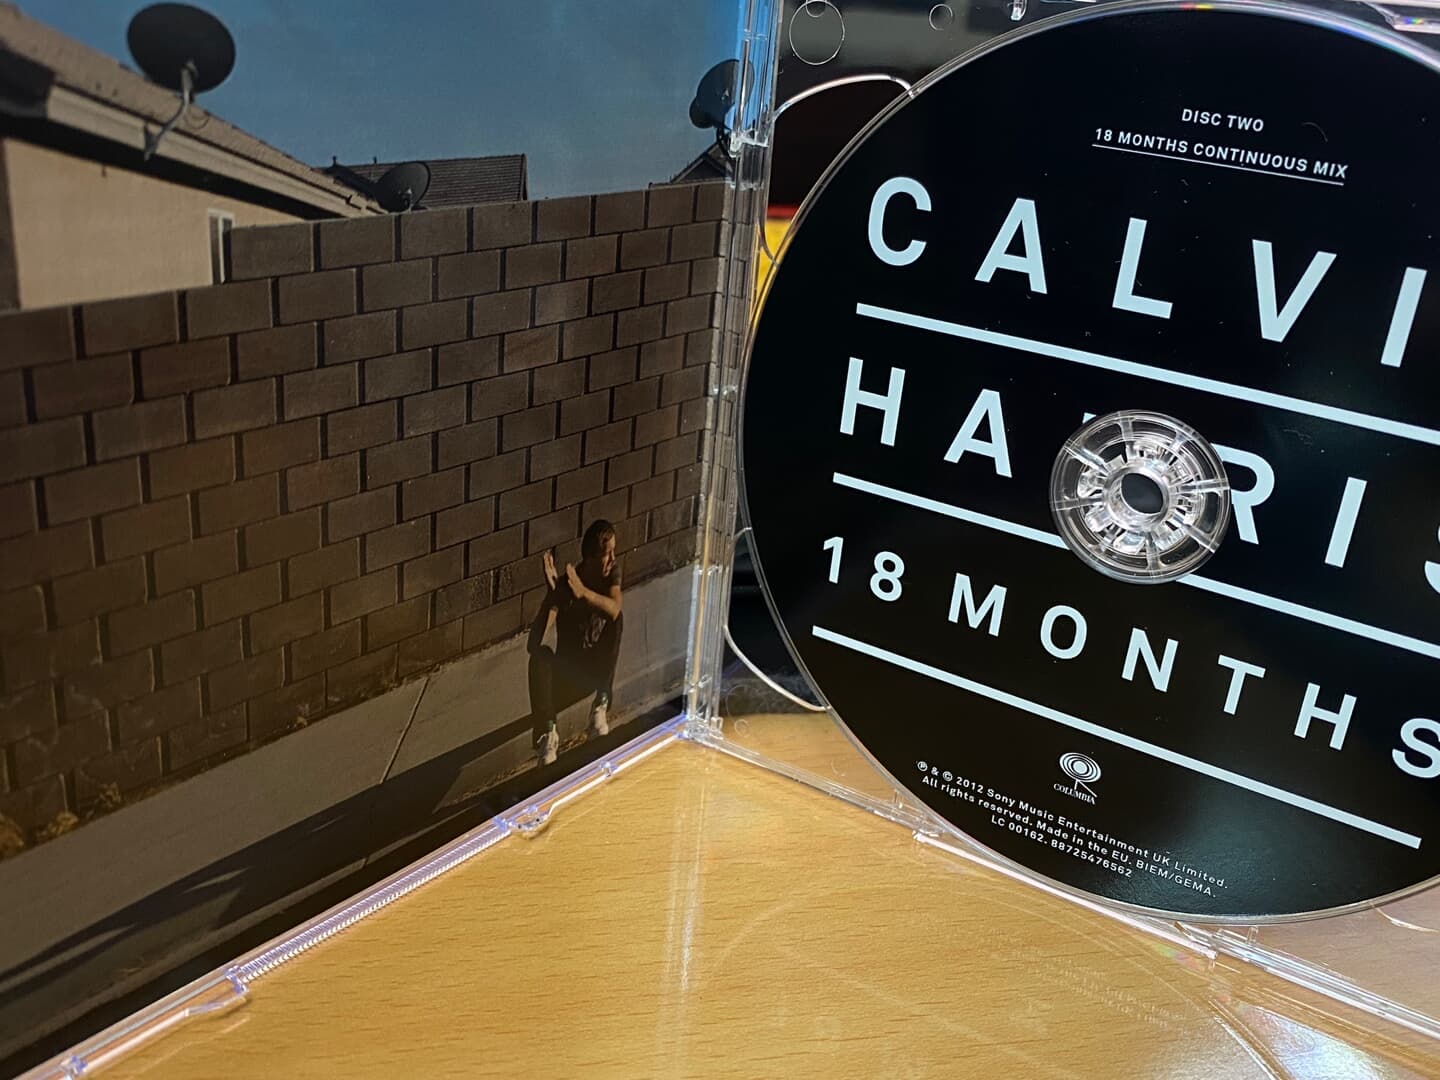 캘빈 해리스 - Calvin Harris - 18 Months 2Cds [E.U발매]